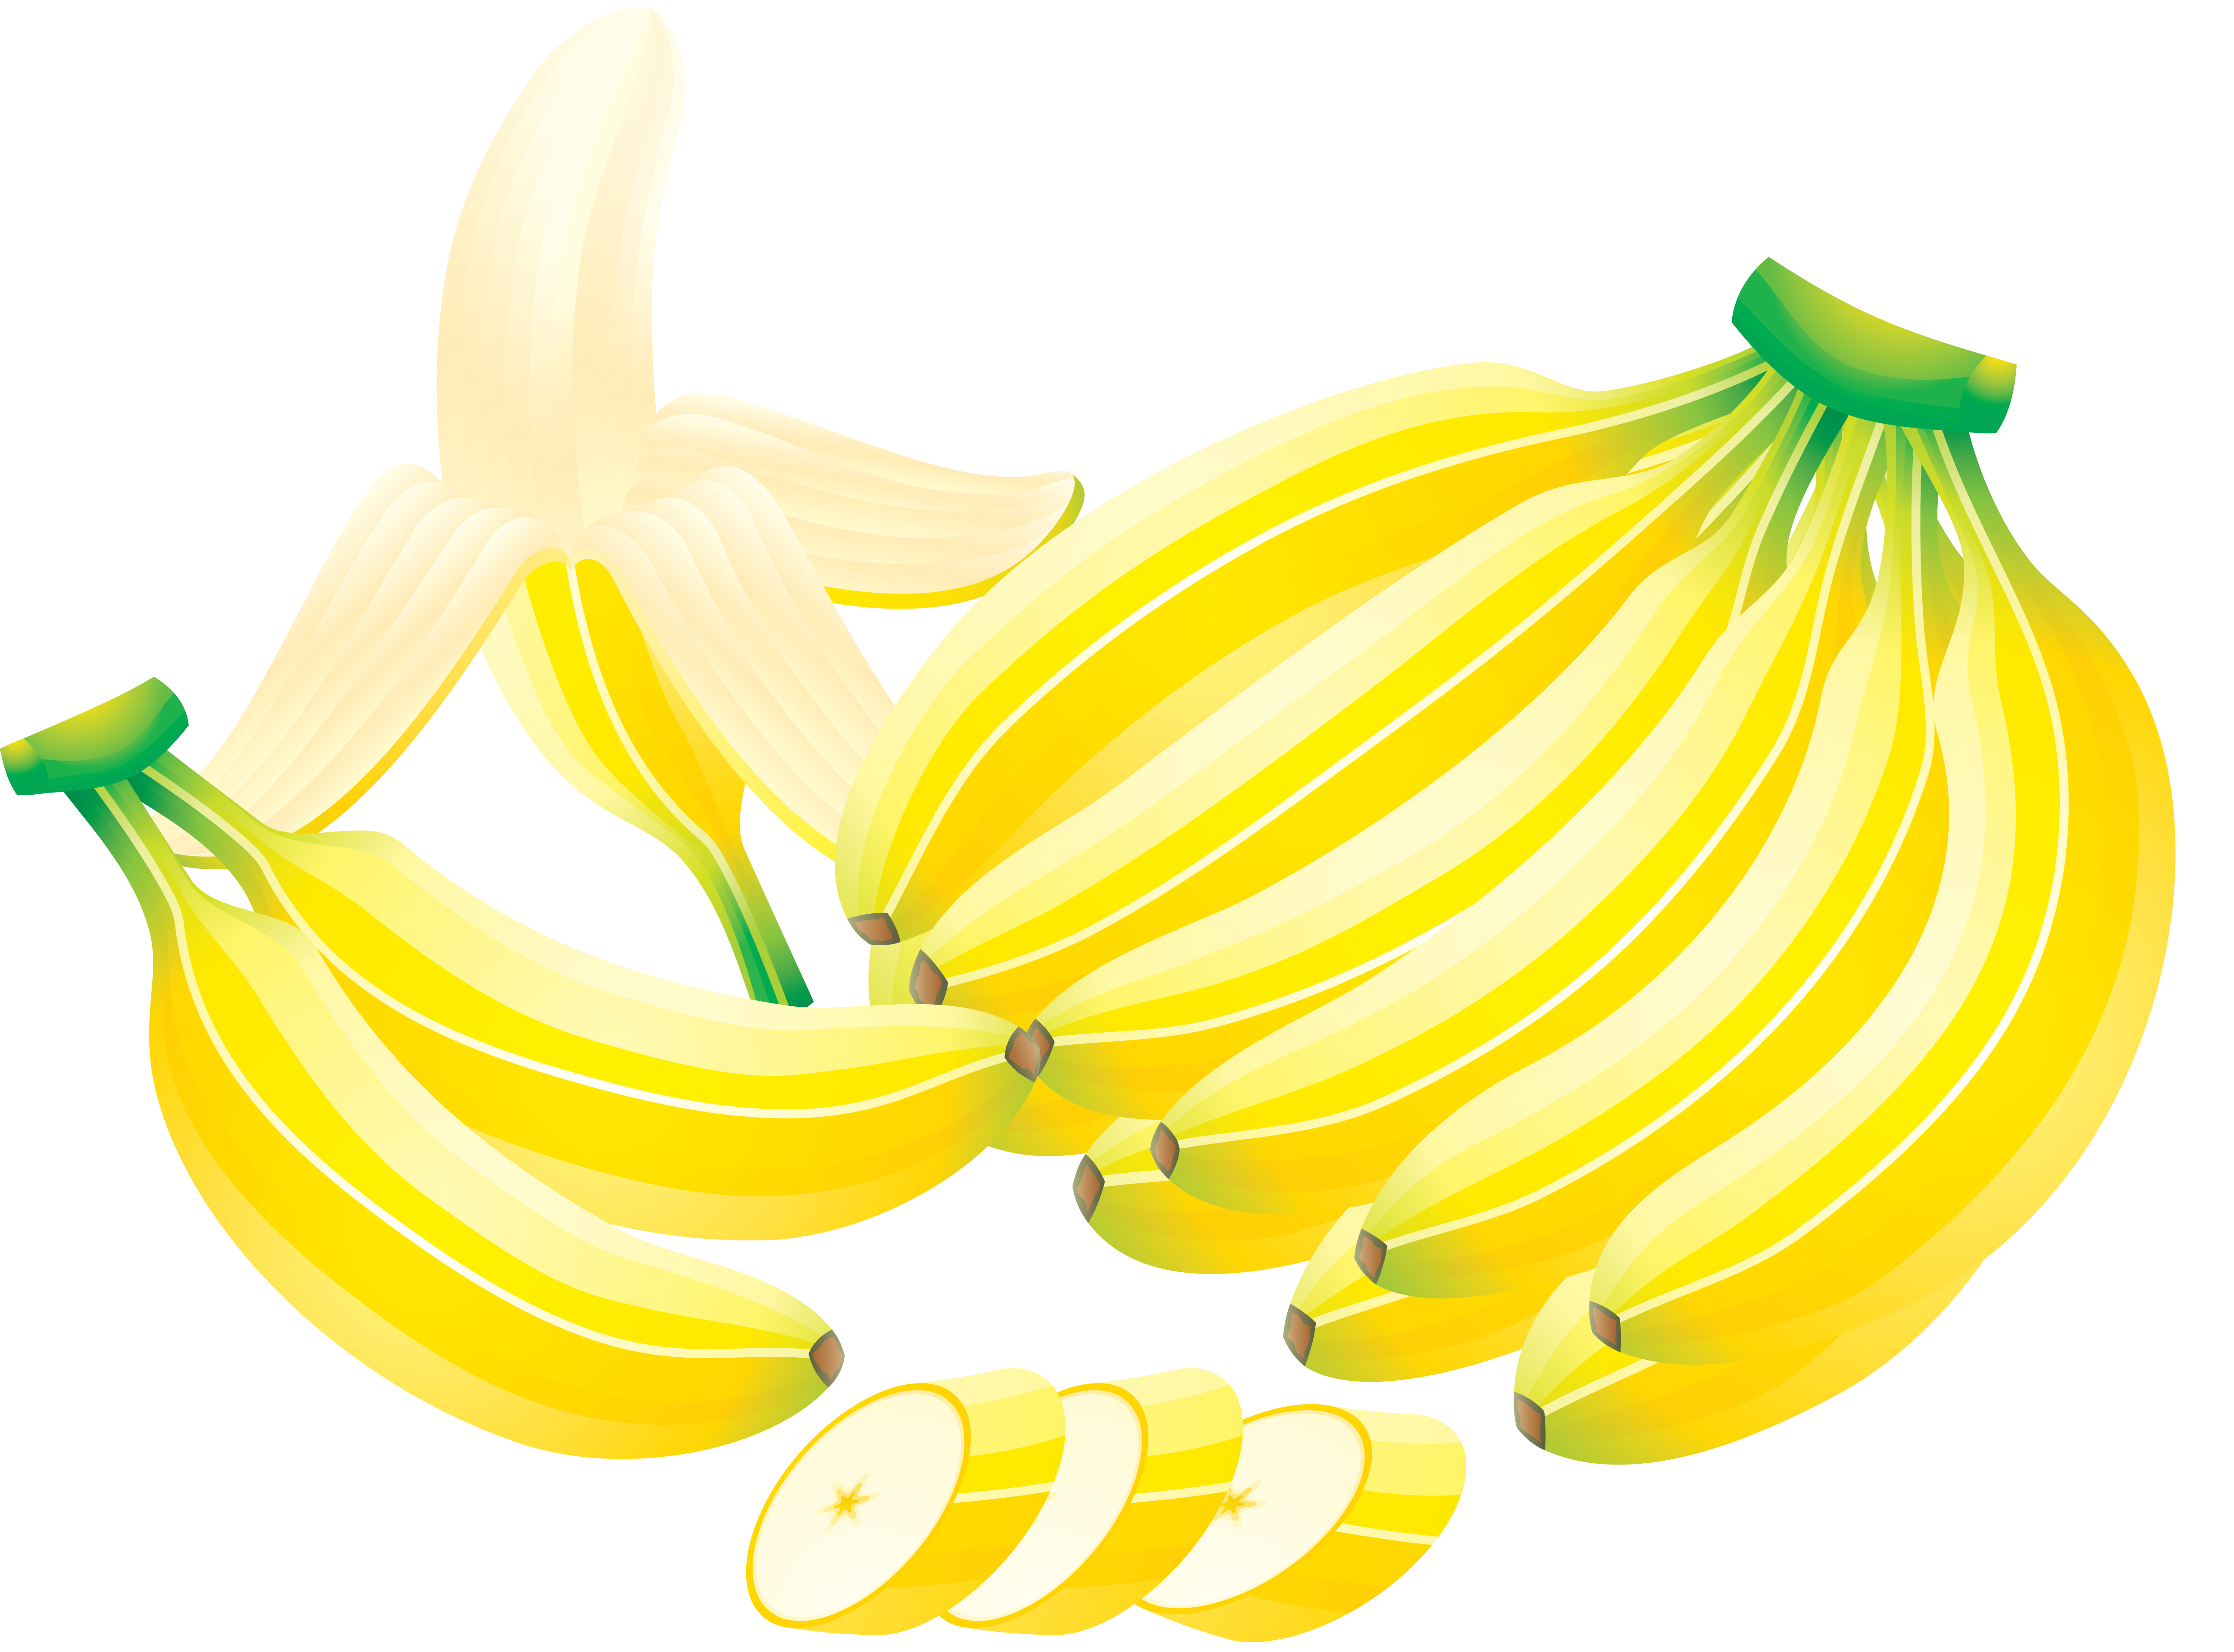 Banana cortada com faca